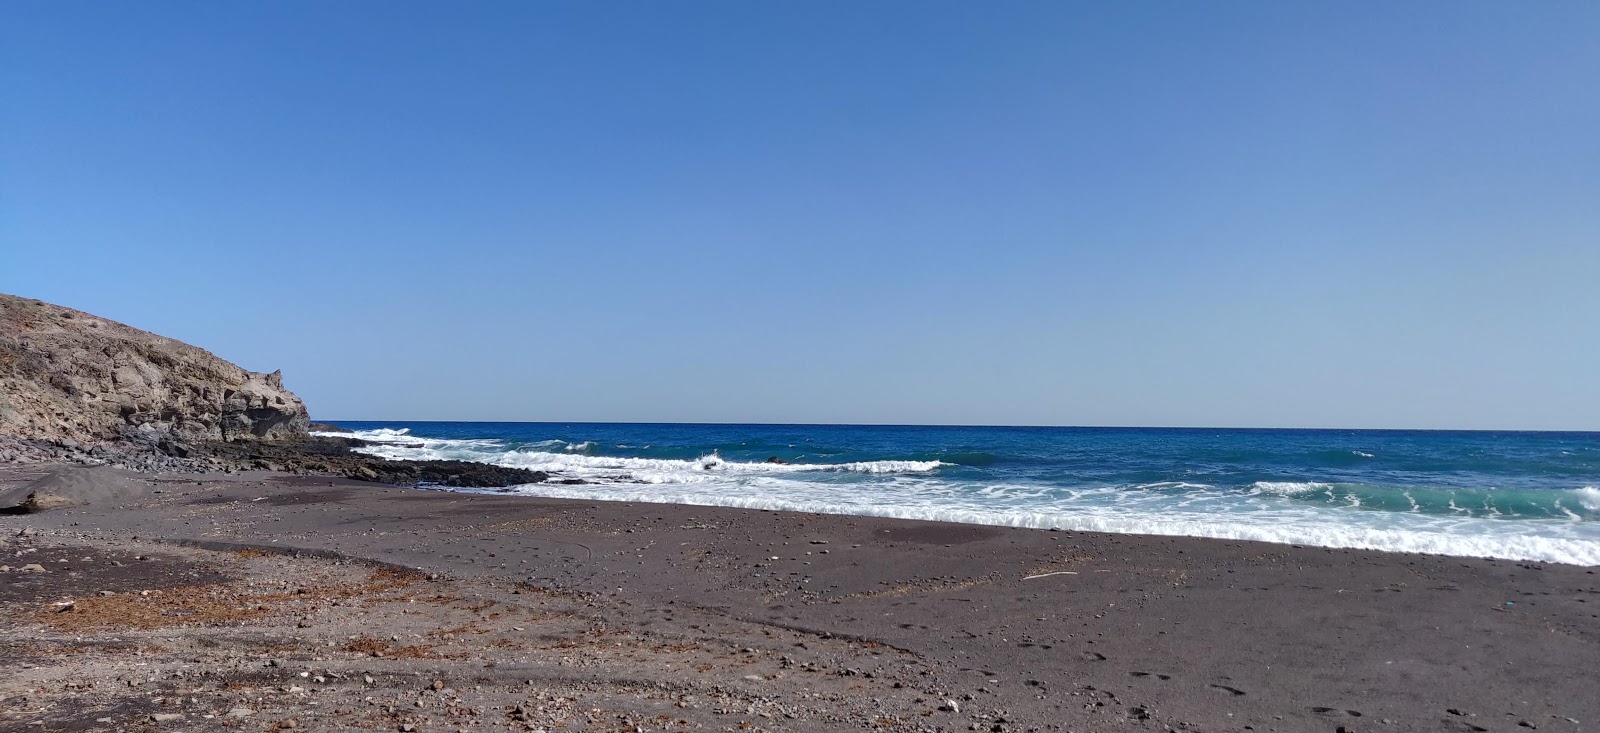 Playa de Gran Valle'in fotoğrafı çok temiz temizlik seviyesi ile